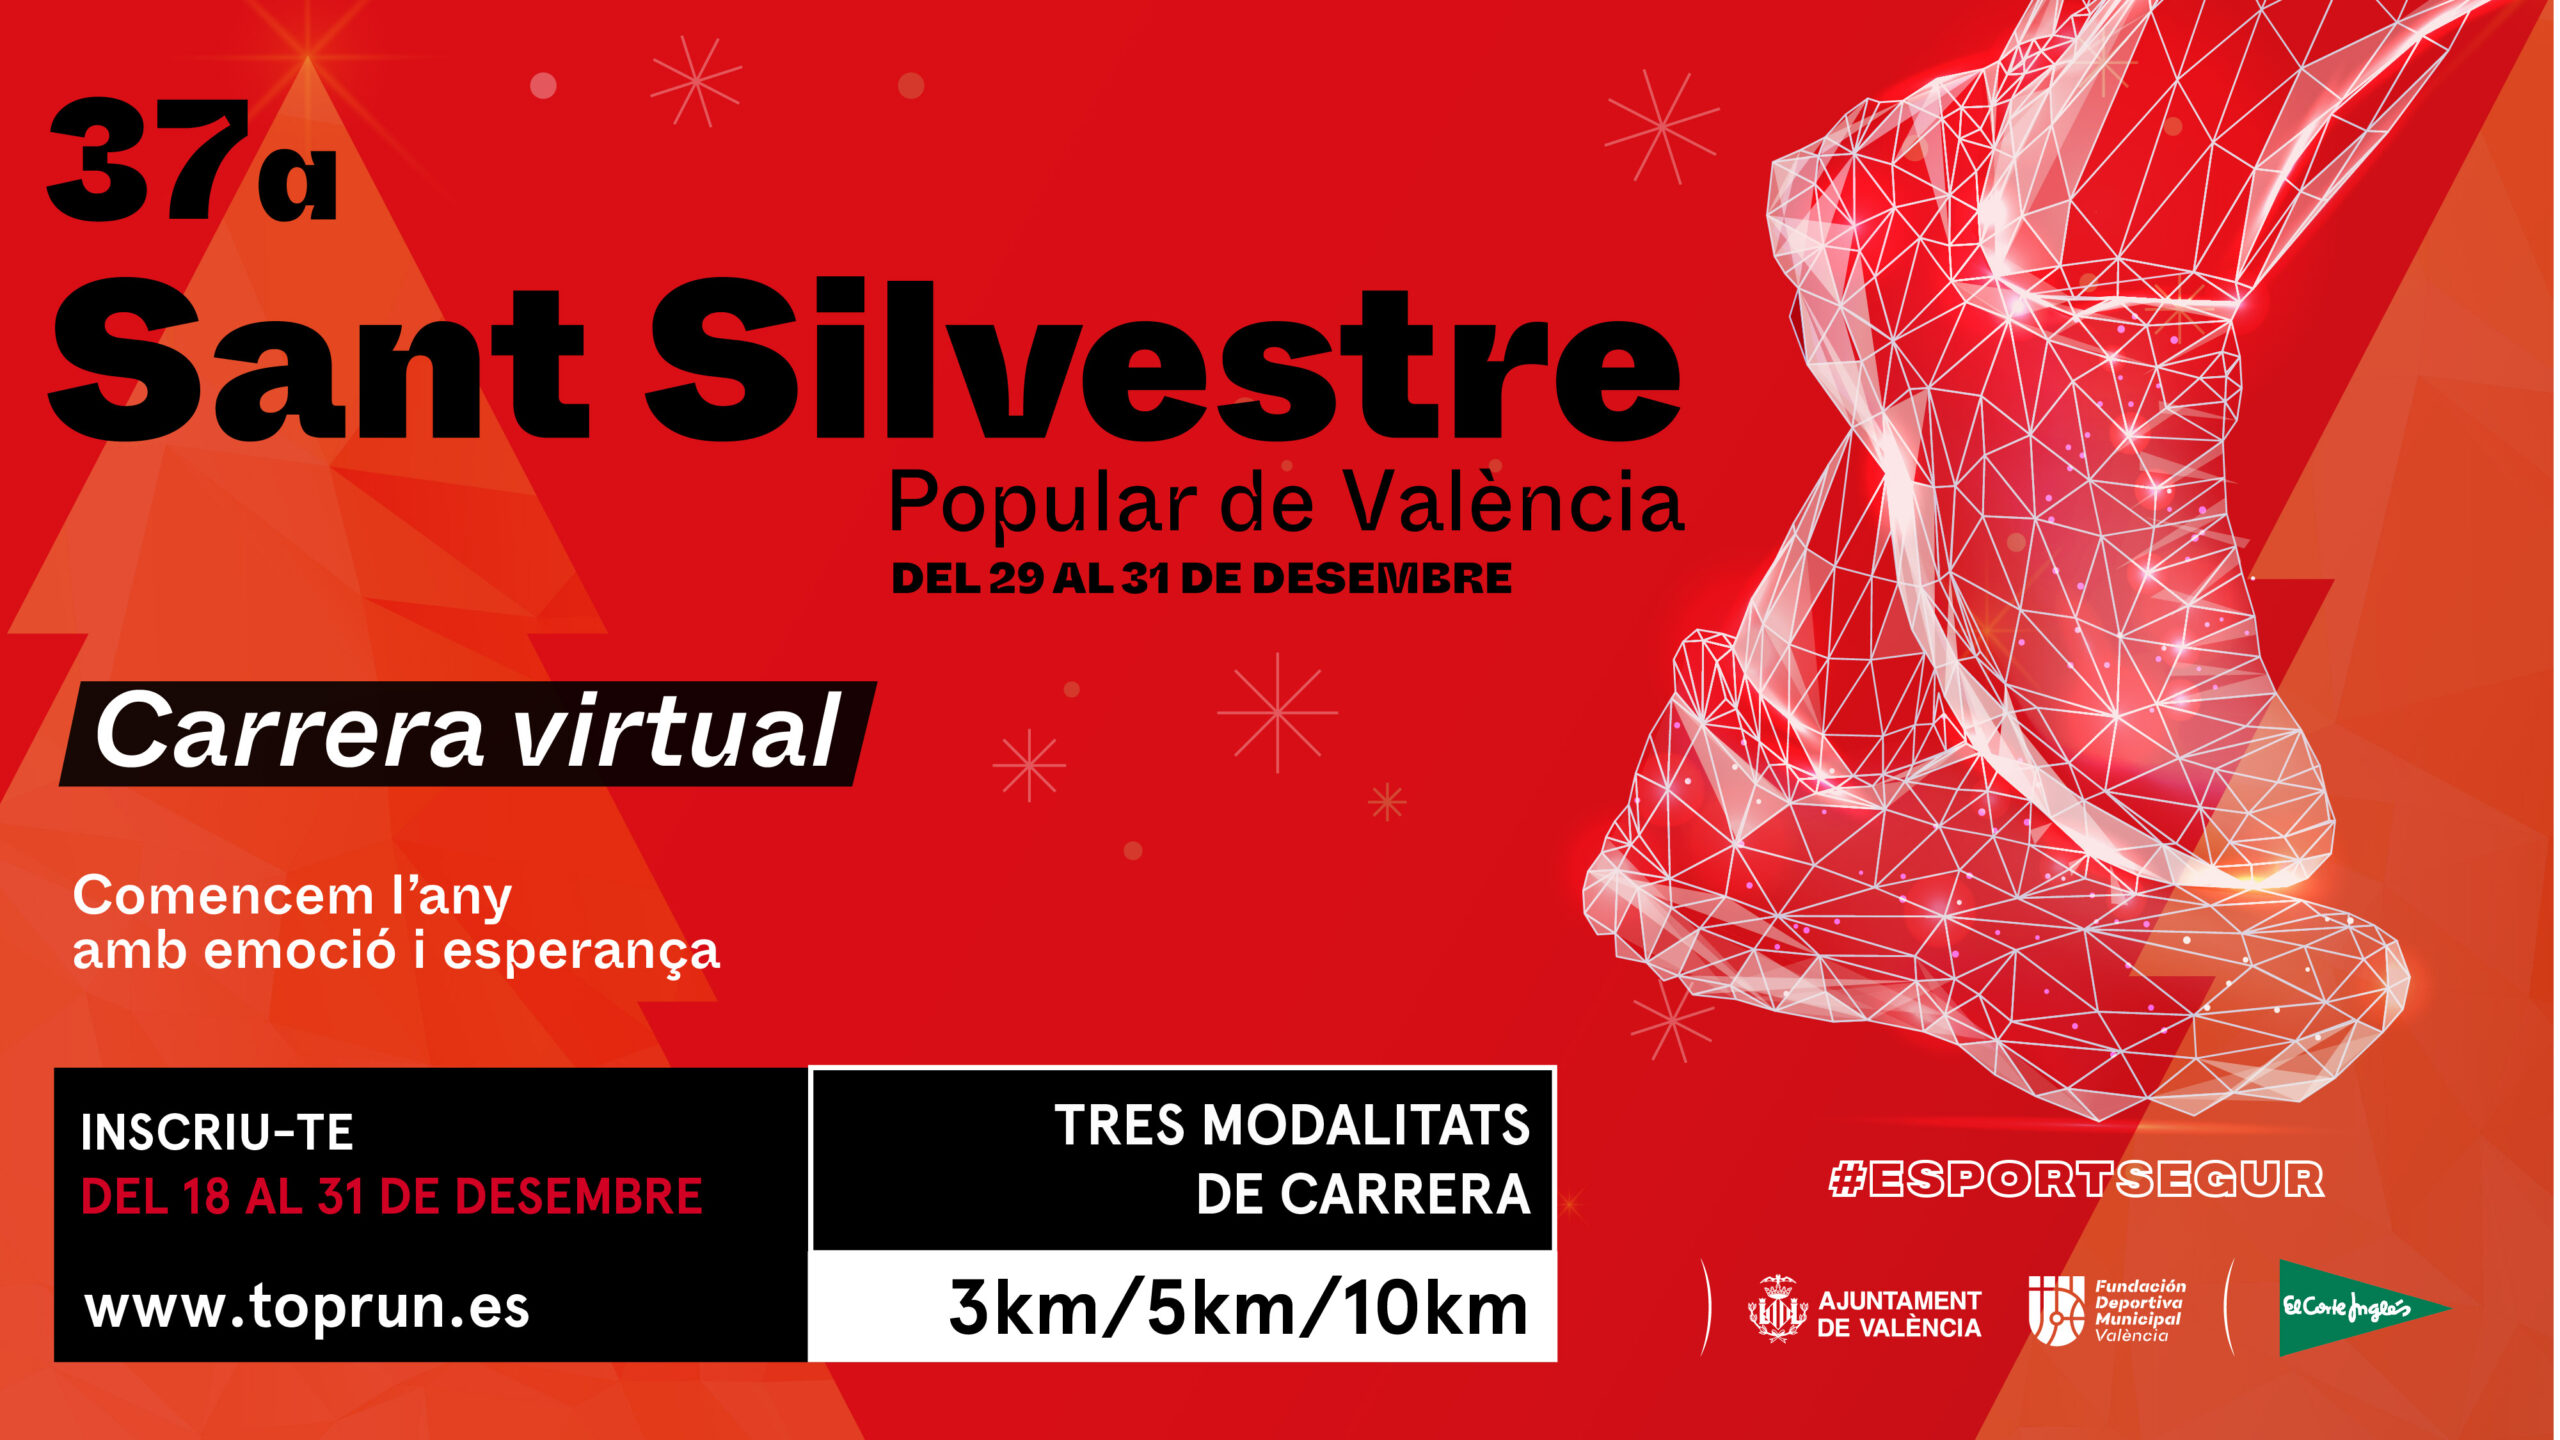 Sant Silvestre valenciana virtual / San Silvestre valenciana virtual